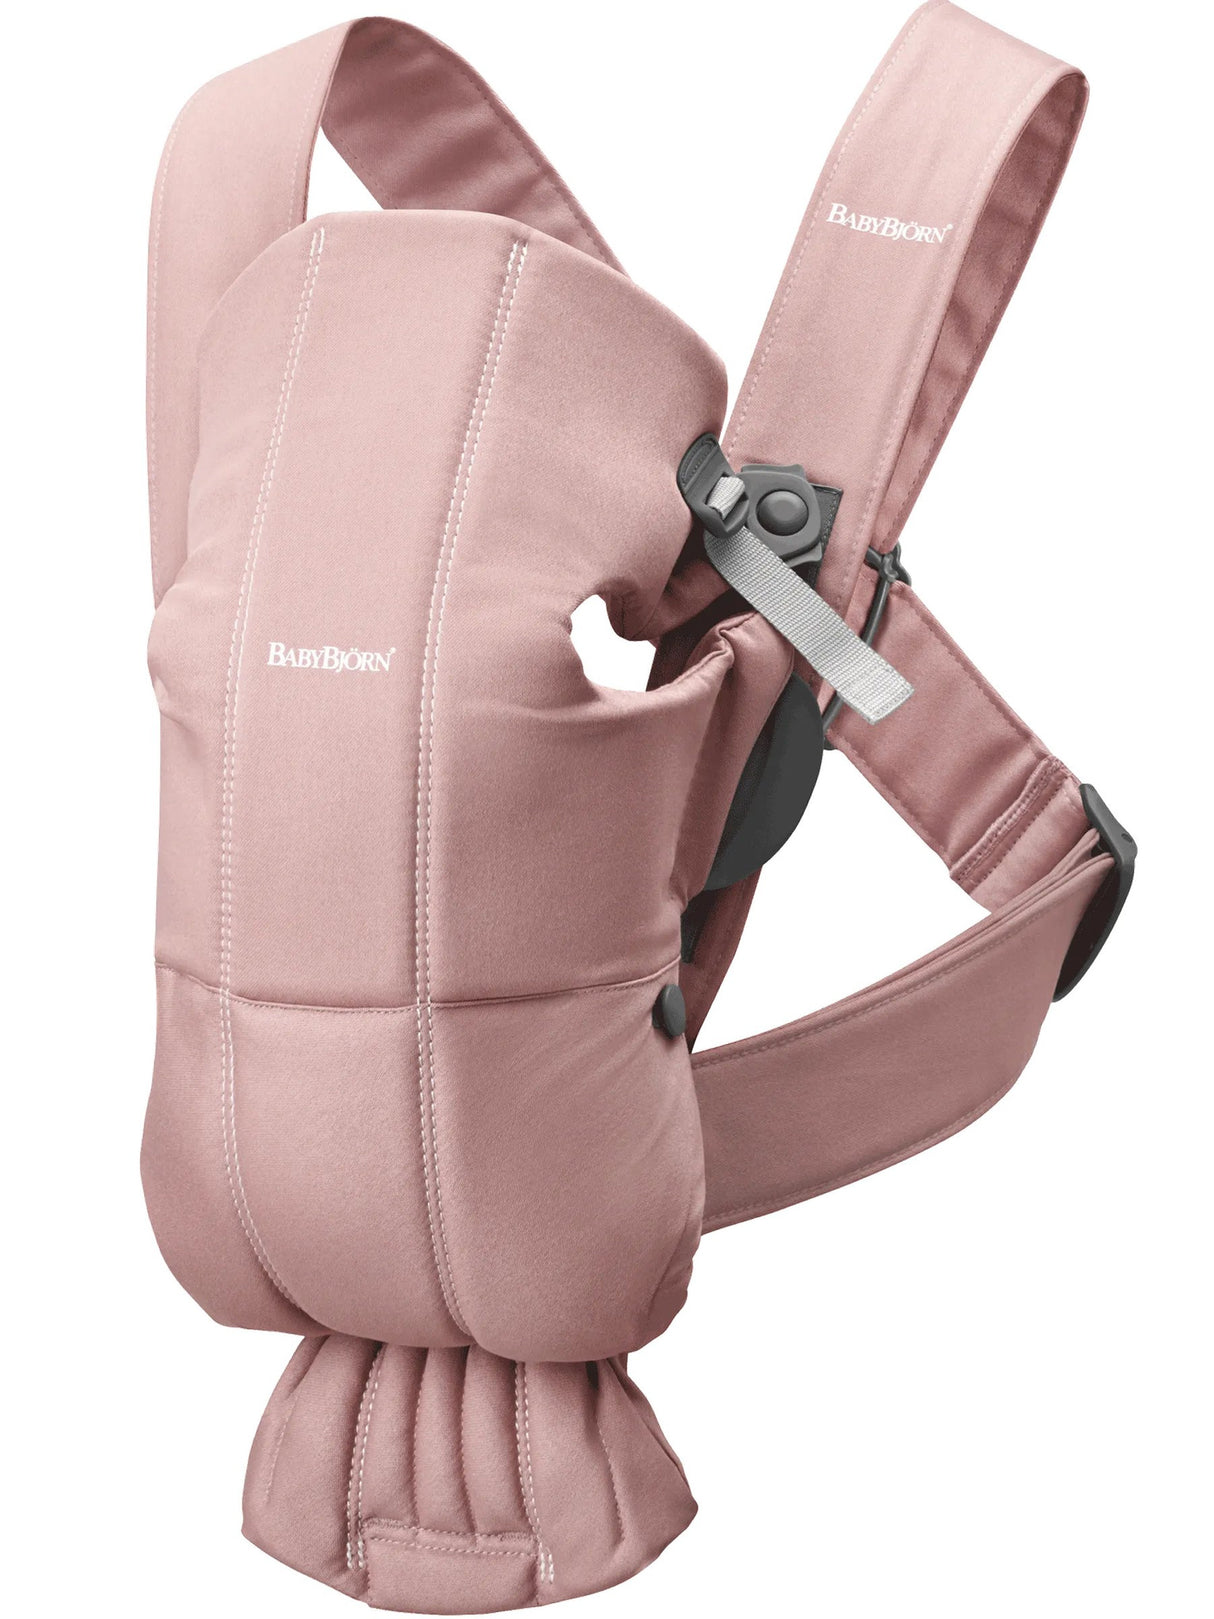 Nosidełko dla dziecka Babybjorn Mini Woven Zgaszony Róż, idealne dla niemowlaka, miękkie i elastyczne, zapewnia przytulność.